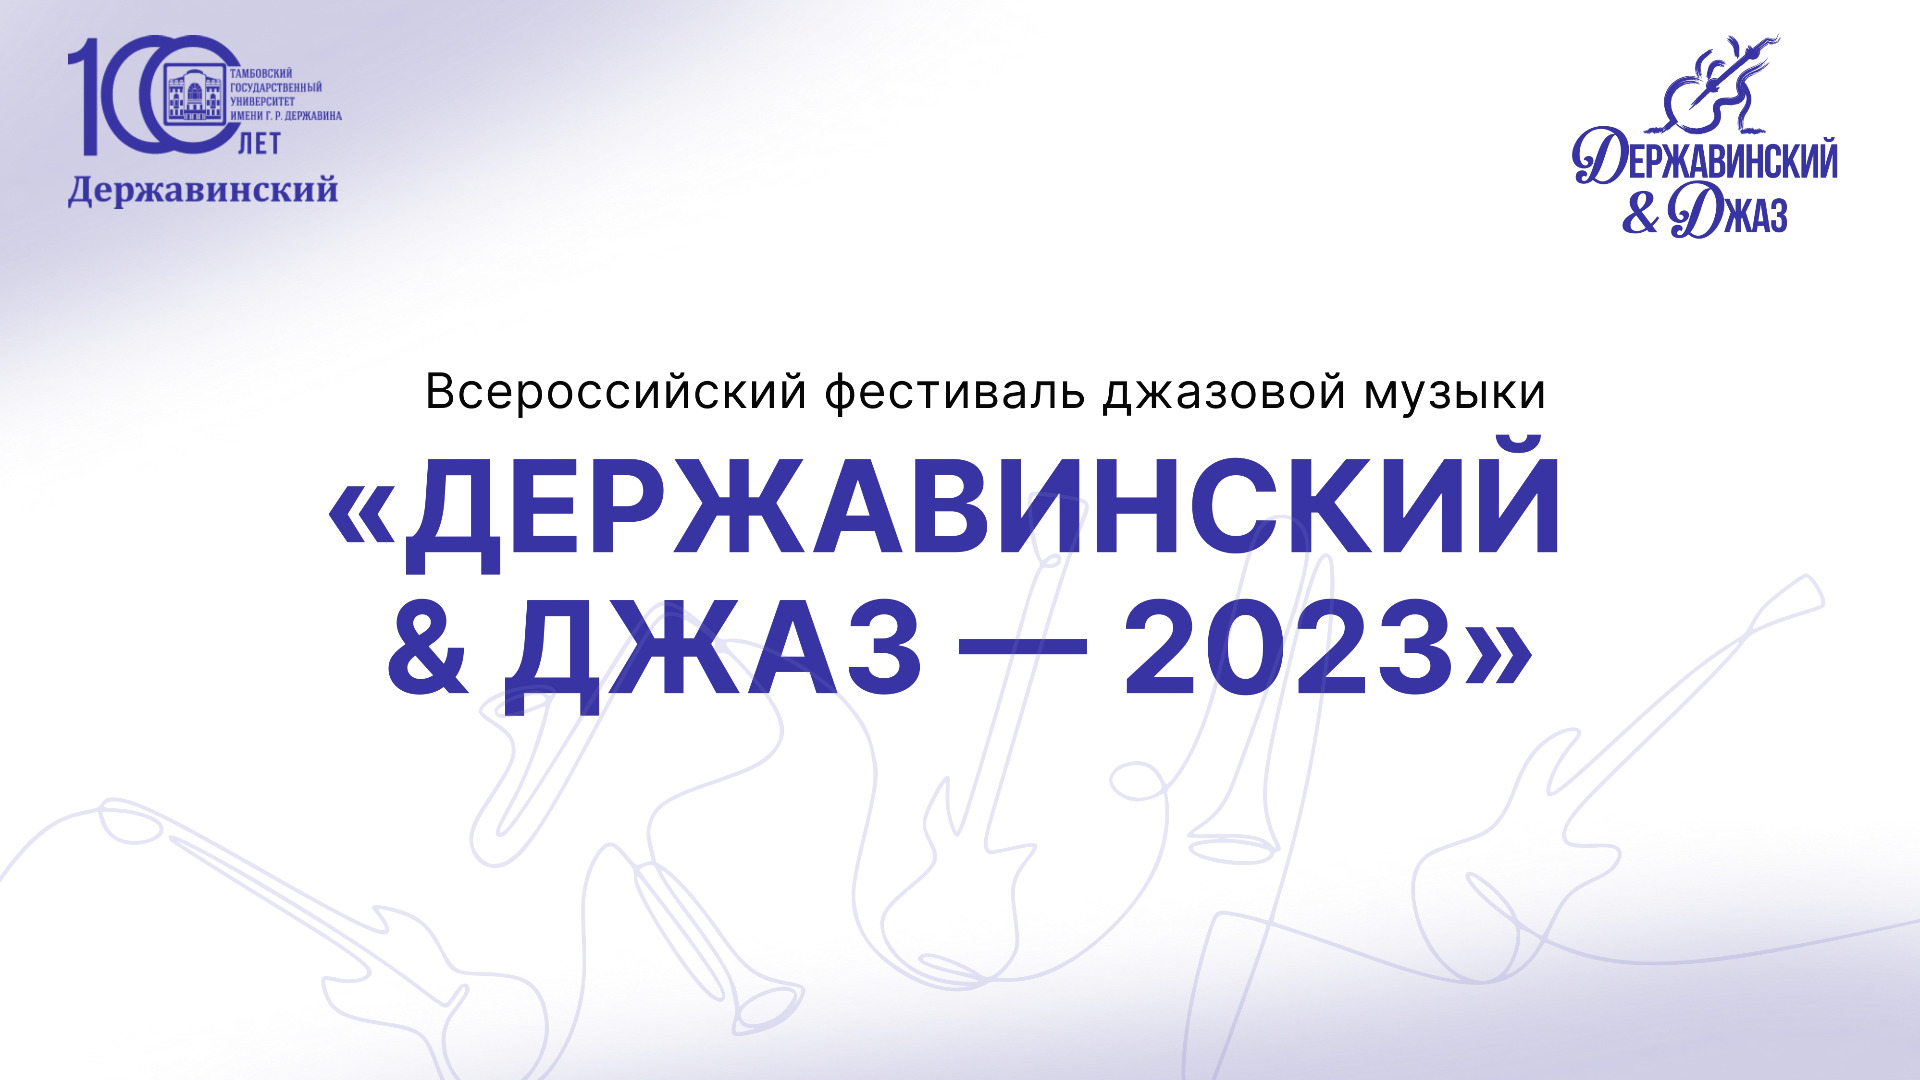 "ДЕРЖАВИНСКИЙ & ДЖАЗ - 2023"